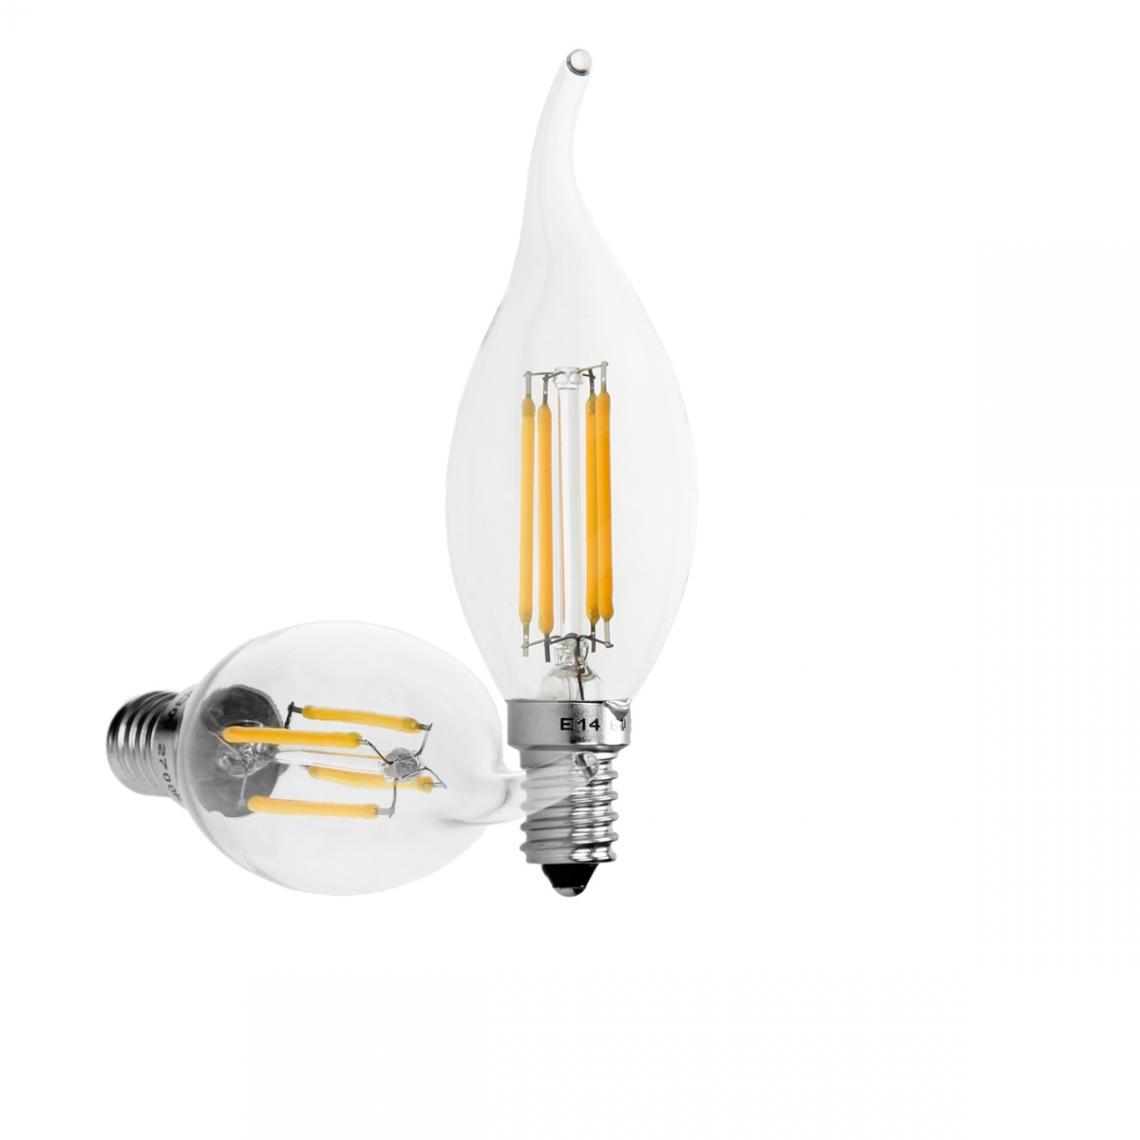 Ecd Germany - 12 x Lampe LED rafale de vent filament de bougie E14 4W blanc chaud - Ampoules LED